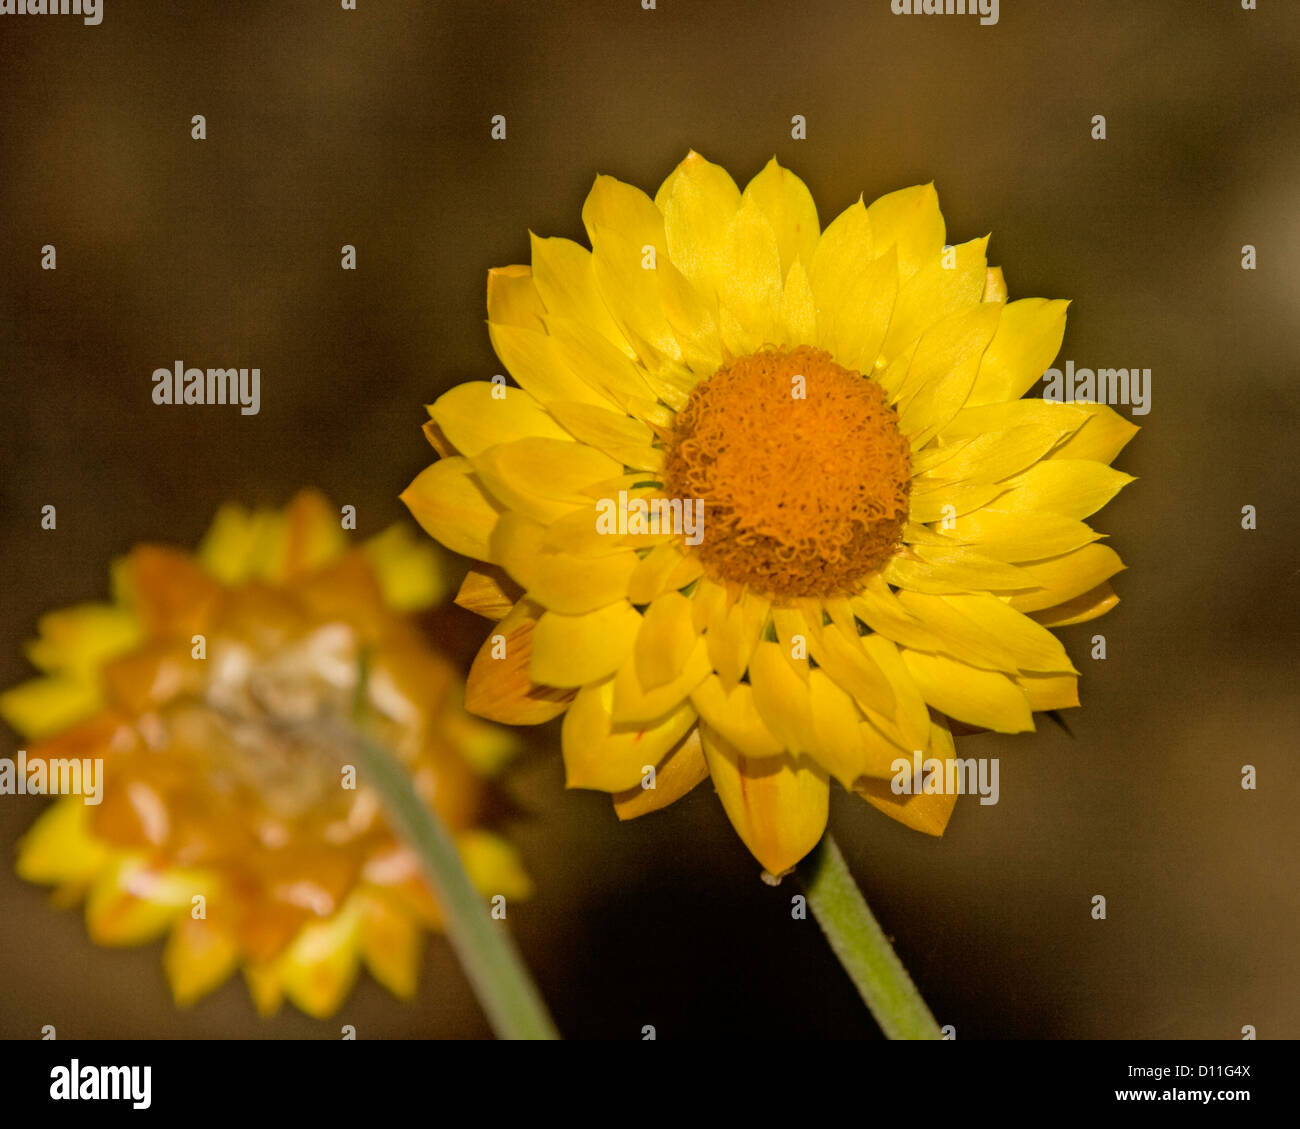 Australian wildflowers - Xenochrysum bracteatum - yellow everlasting daisy, Stock Photo